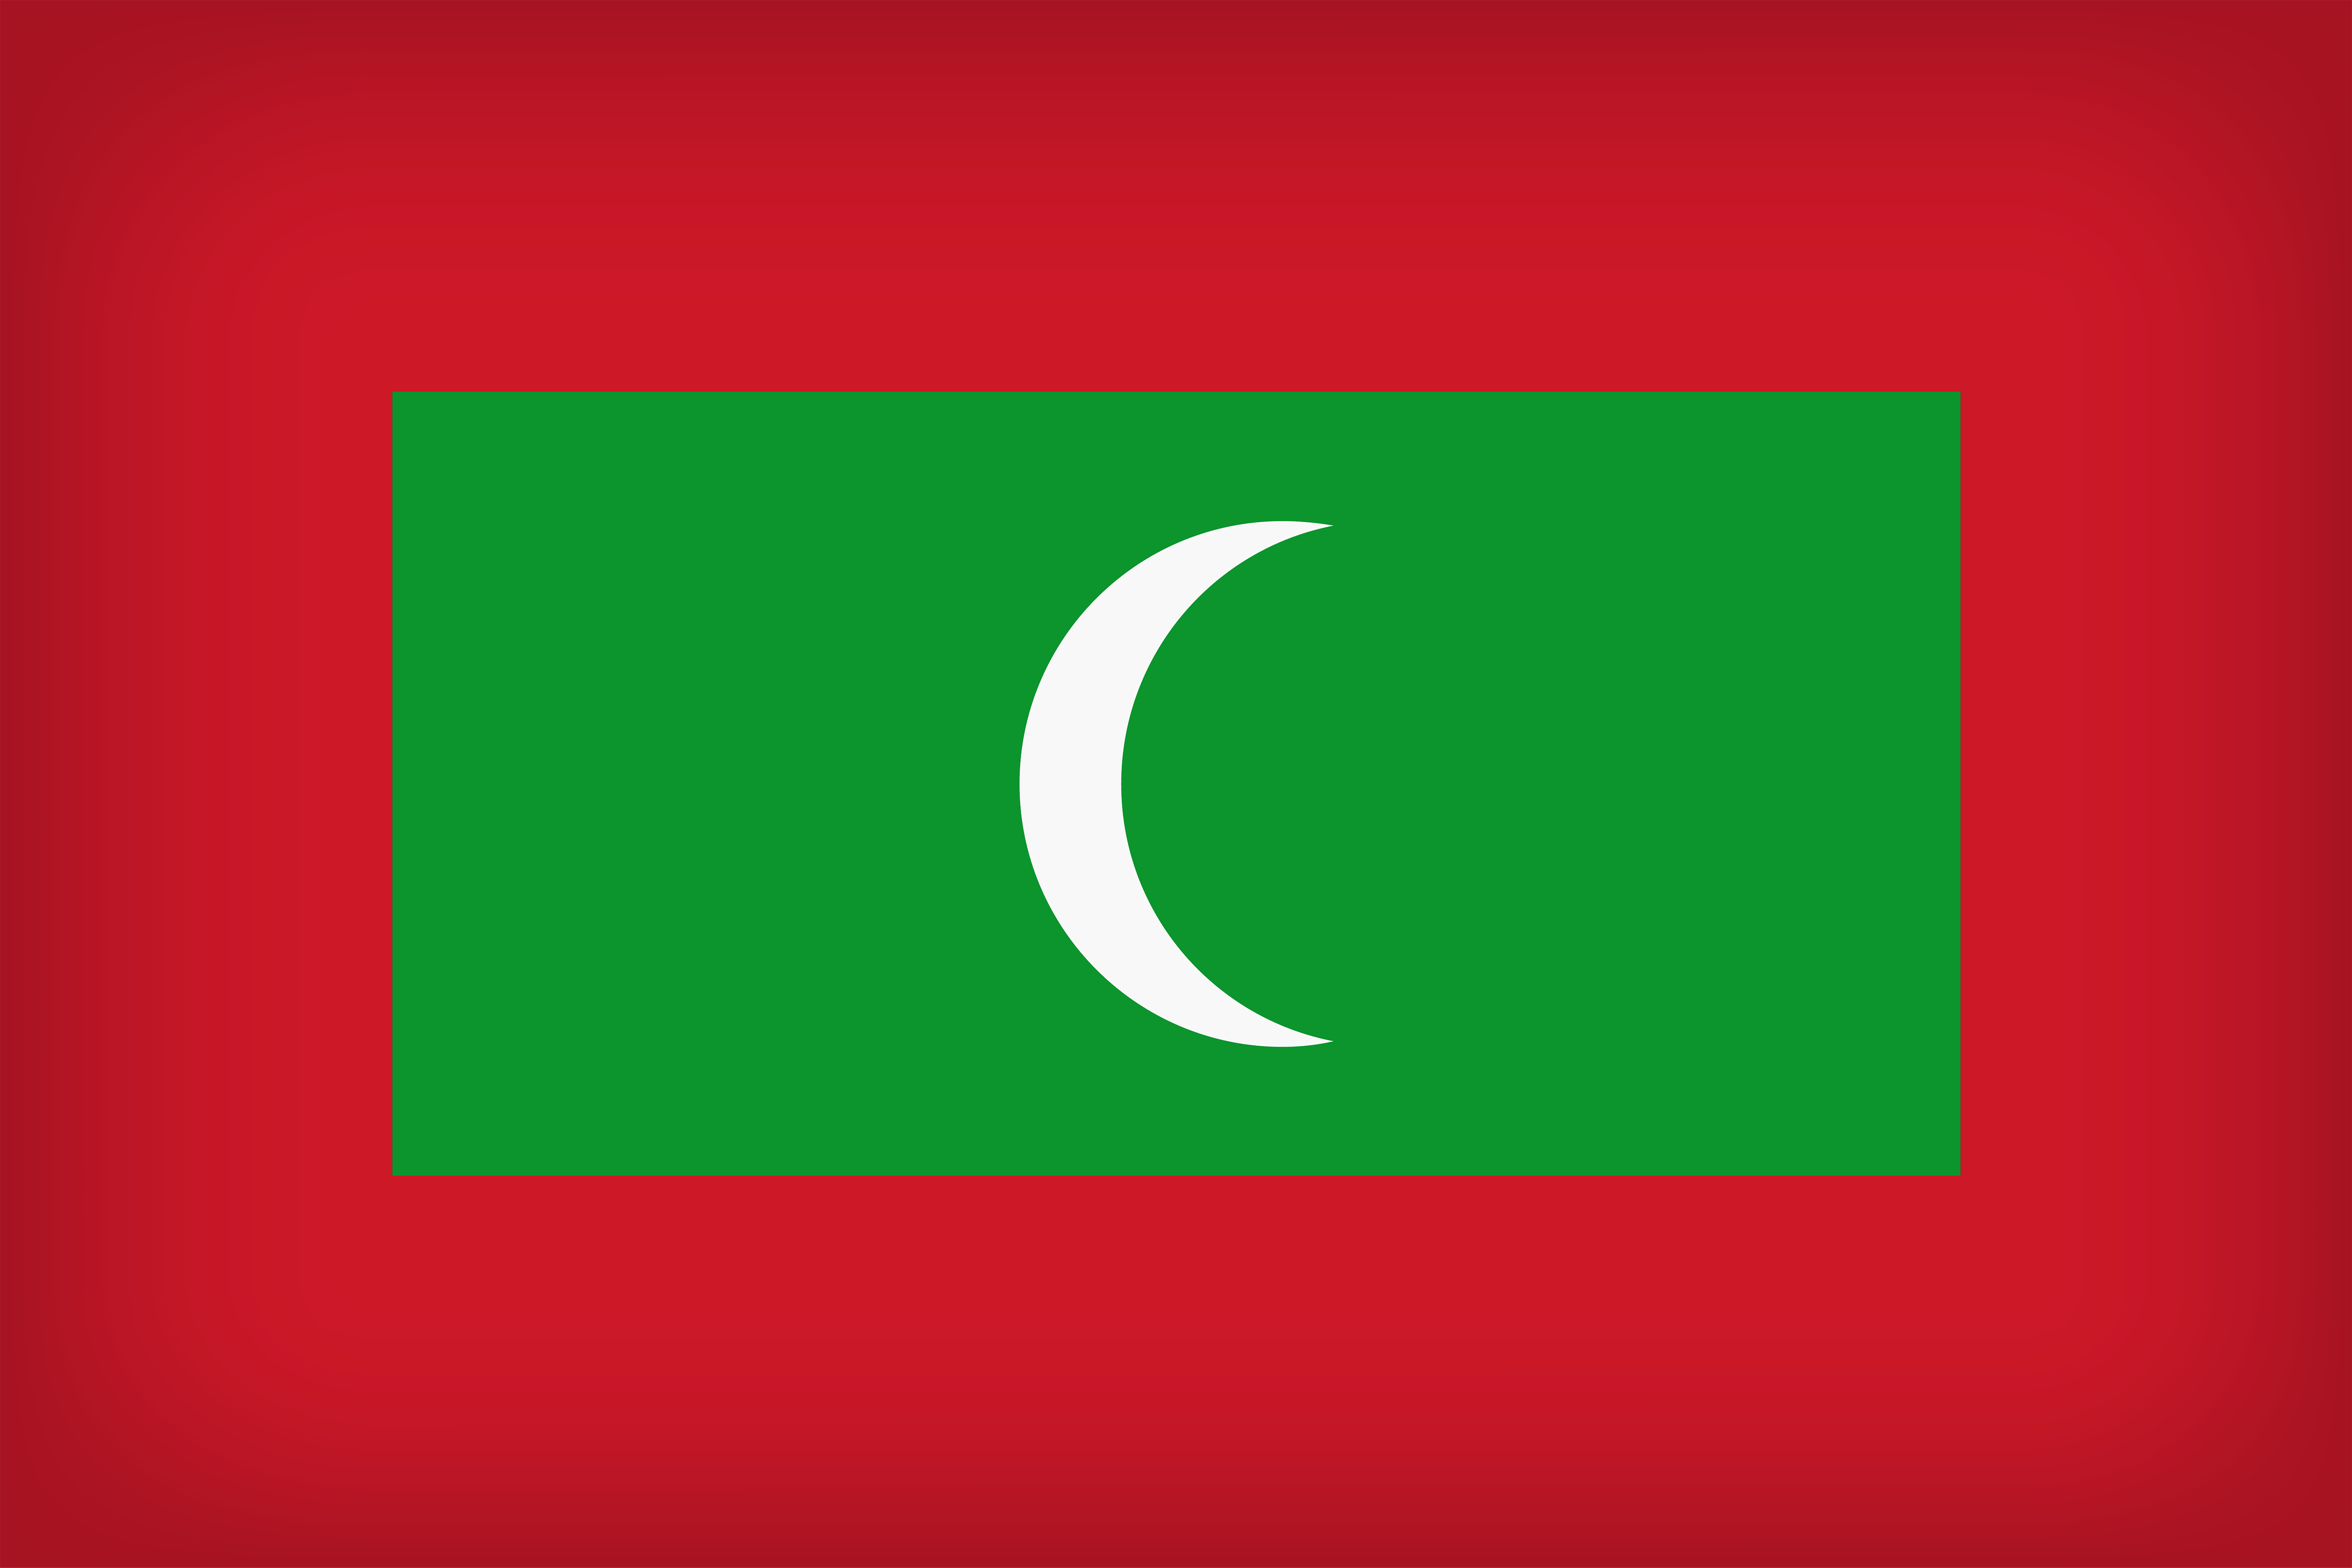 Maldives Large Flag Quality Image